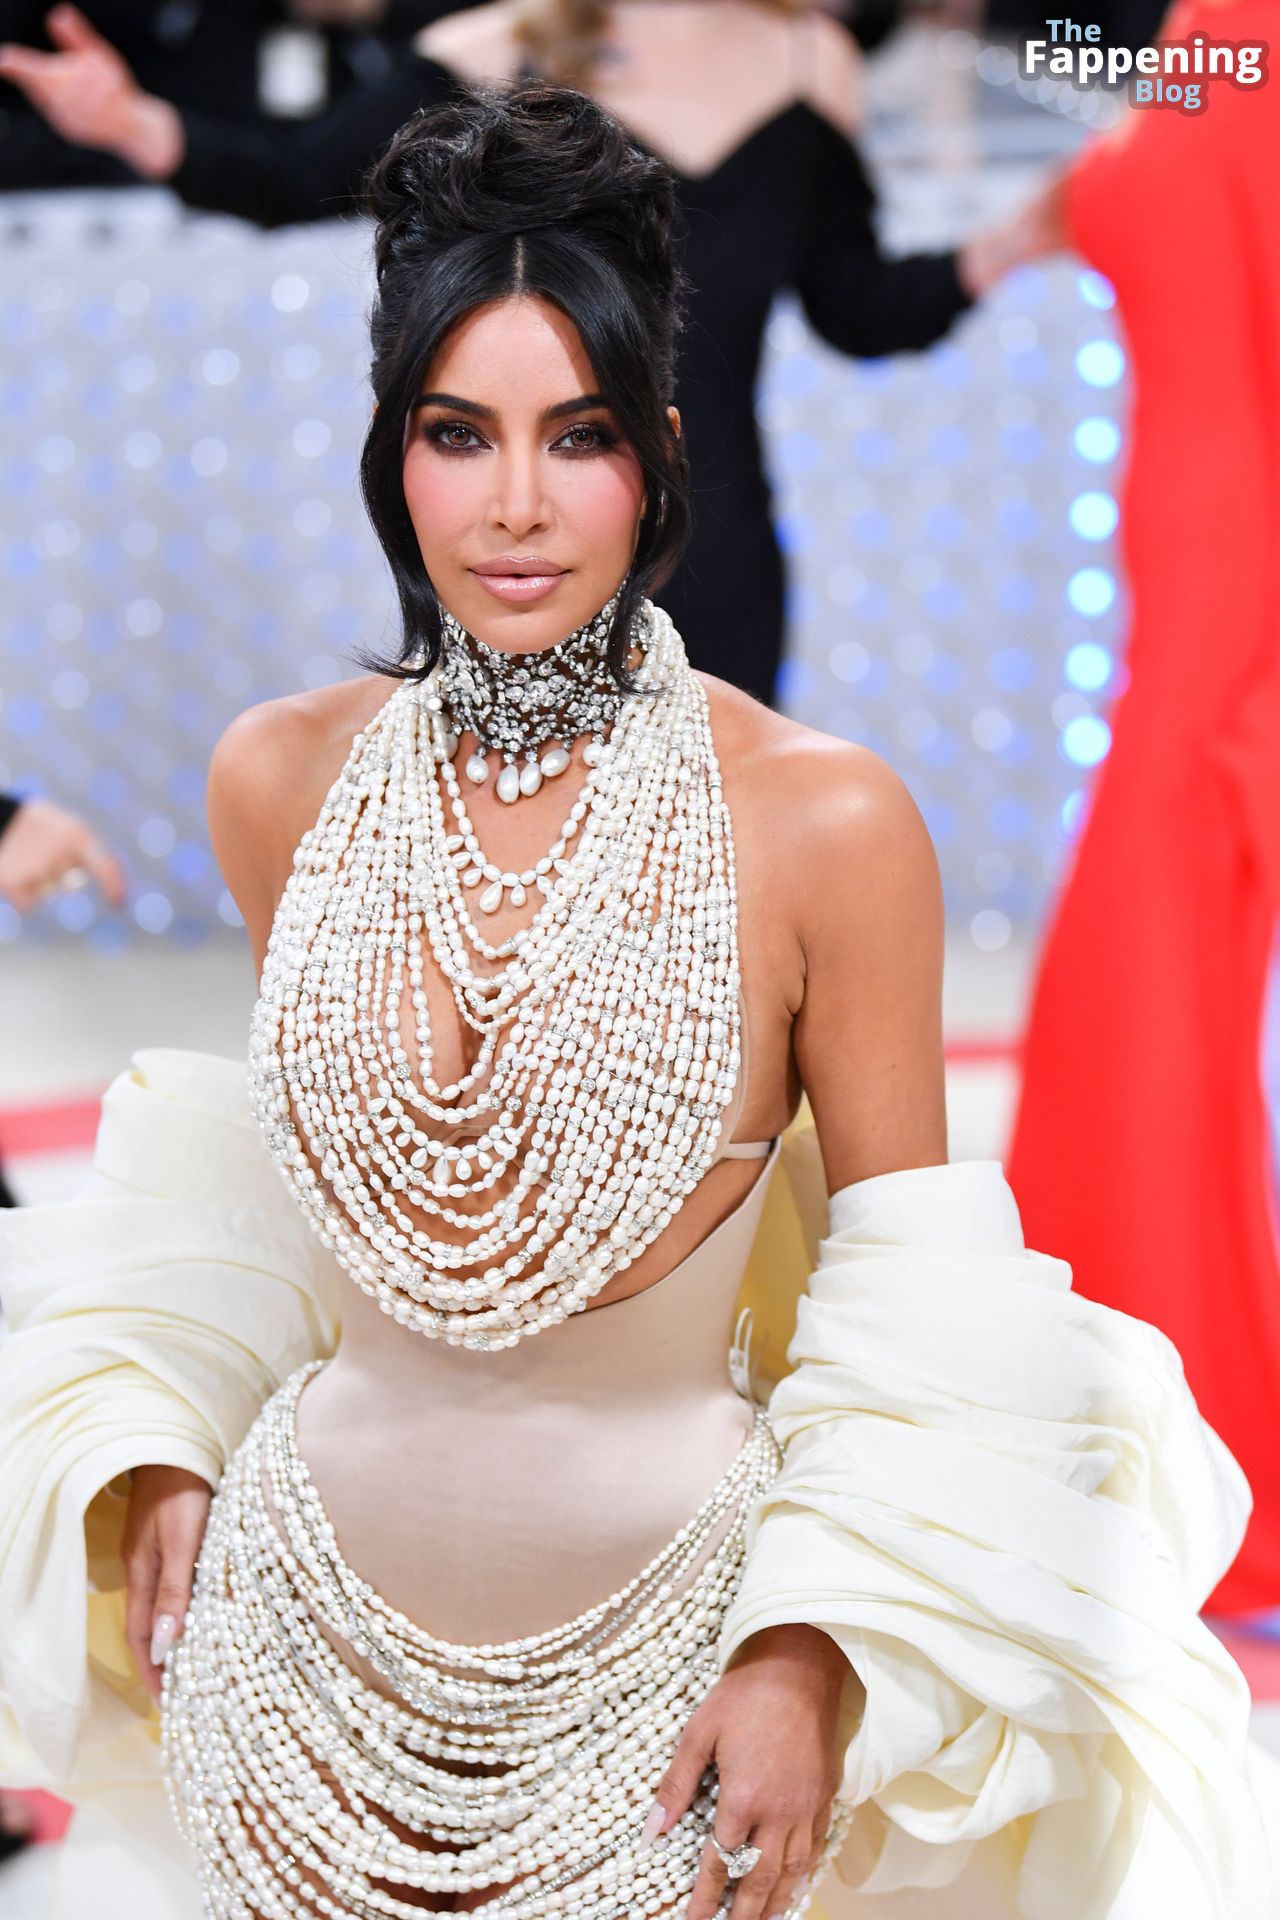 Kim-Kardashian-Sexy-The-Fappening-Blog-31.jpg